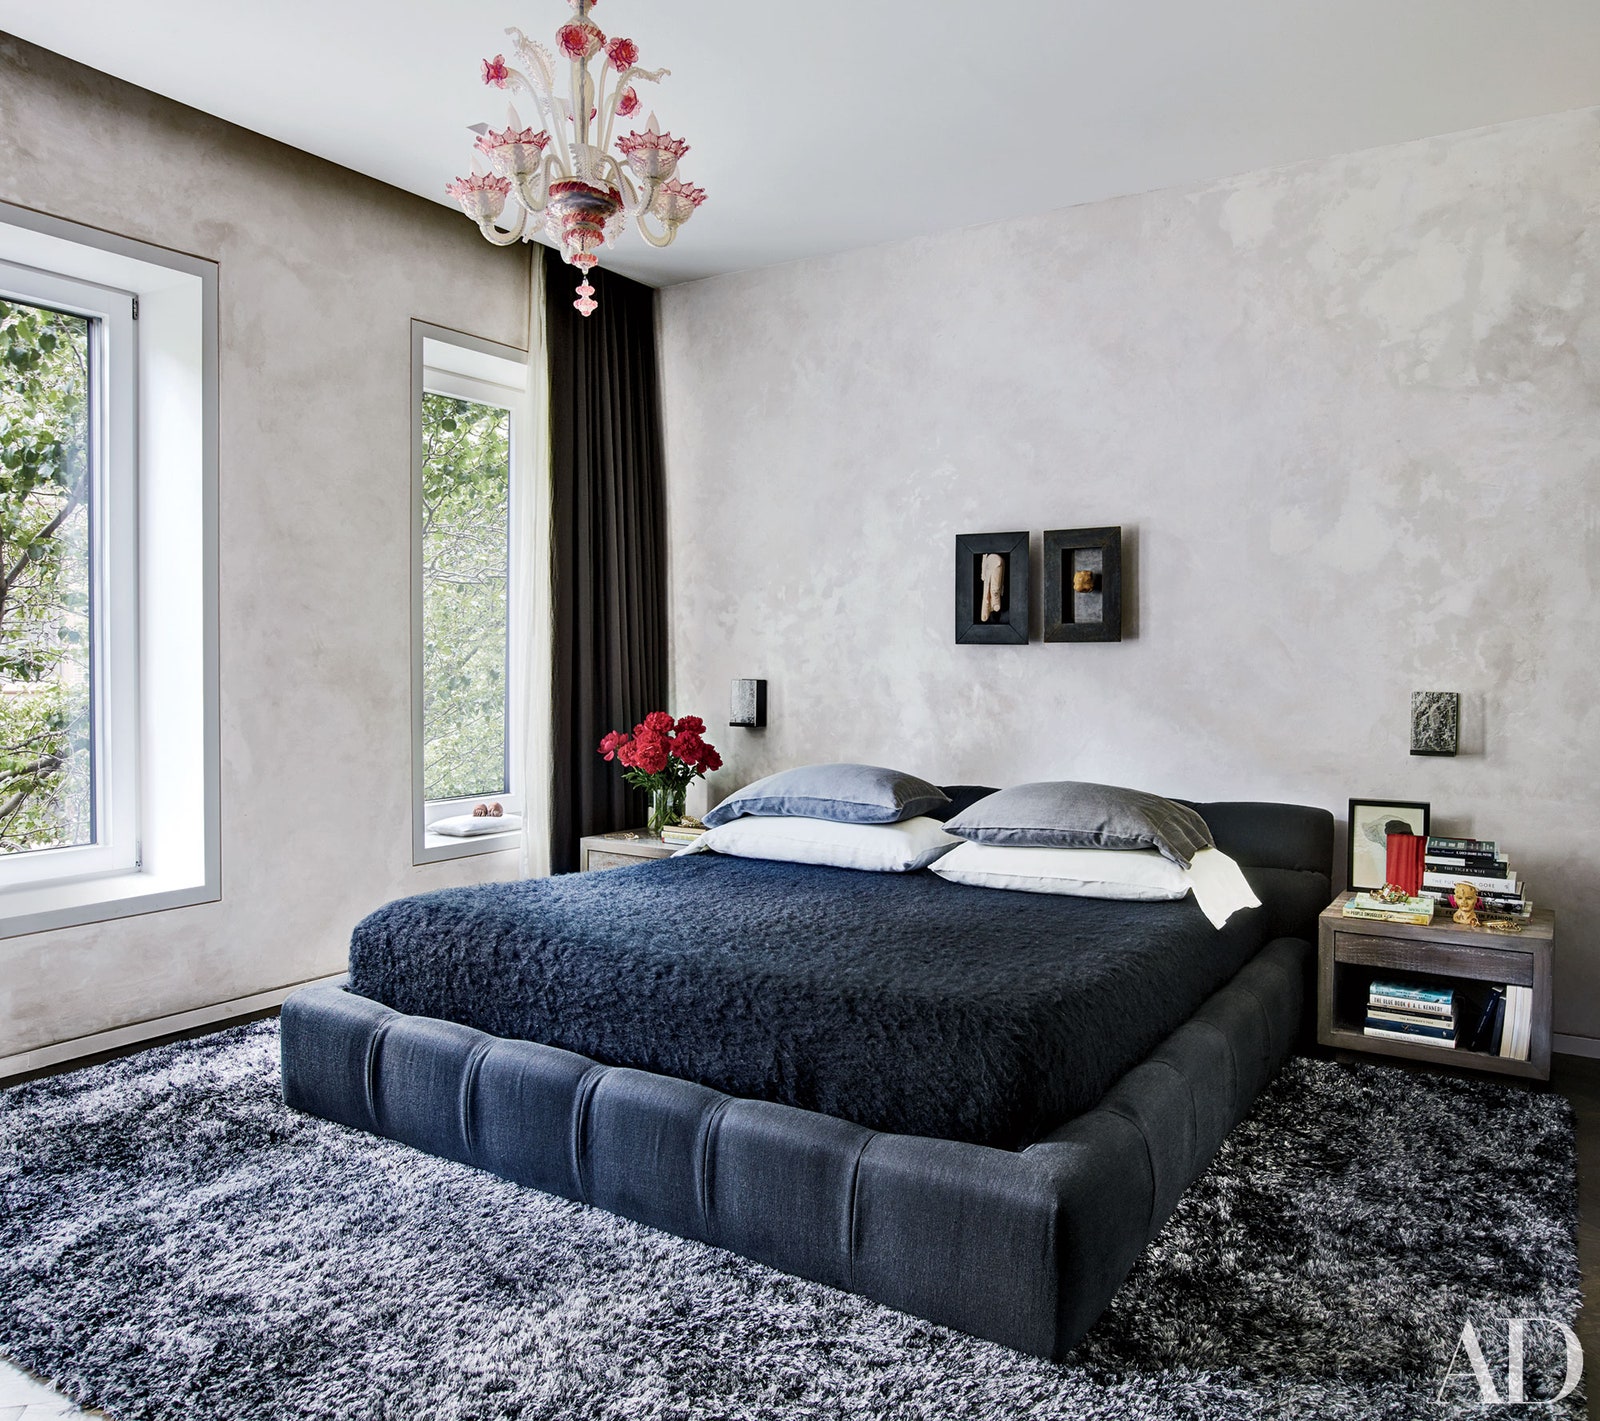 Khung giường và nệm màu xanh denim đậm kết hợp cặp táp đầu giường cân xứng cho phòng ngủ vẻ đẹp hài hòa, vững chãi.